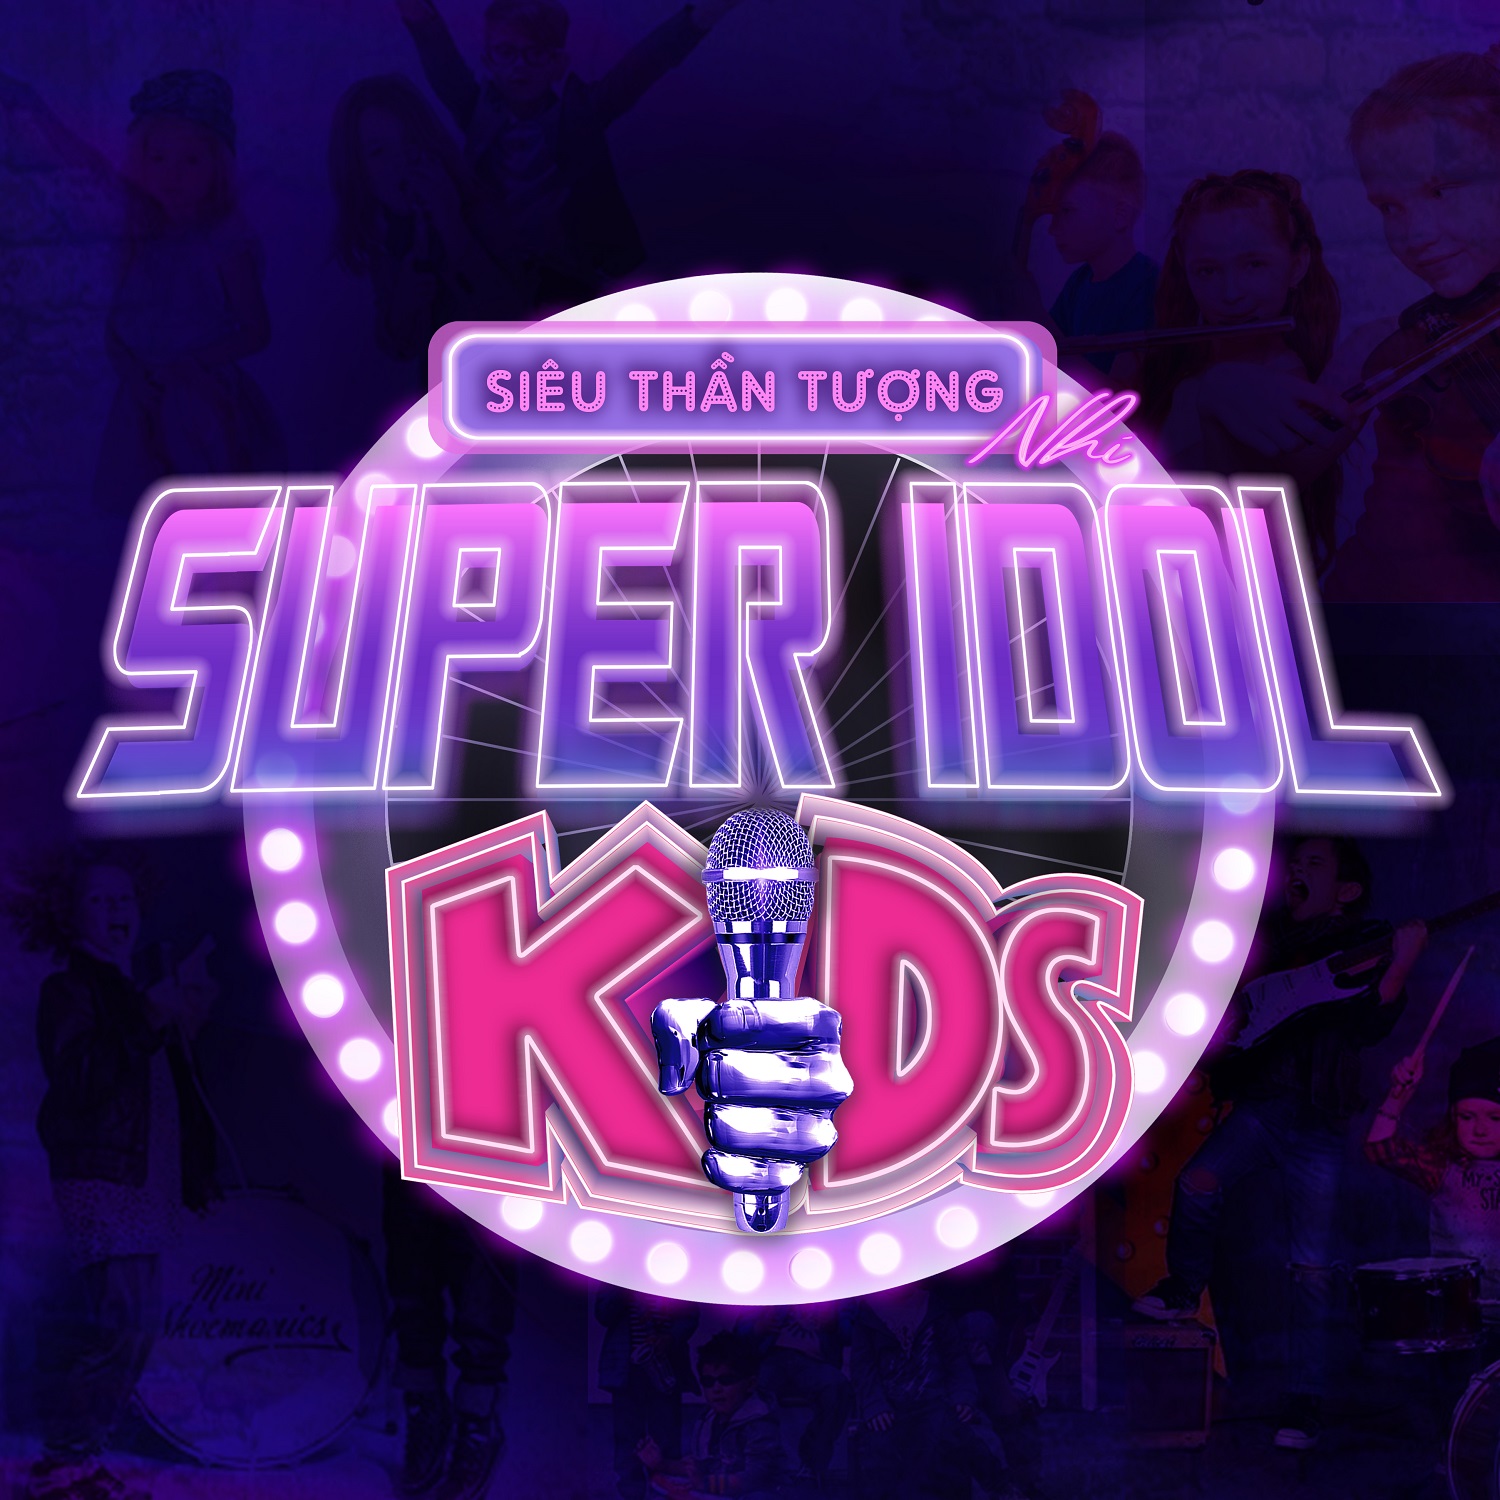 Đội ngũ Super Idol Kids không chỉ đáng yêu mà còn rất tài năng. Xem khiêu vũ, hát nhép và thể hiện tài năng của các em nhỏ, chắc chắn sẽ khiến bạn phải yêu thích ngay lập tức.